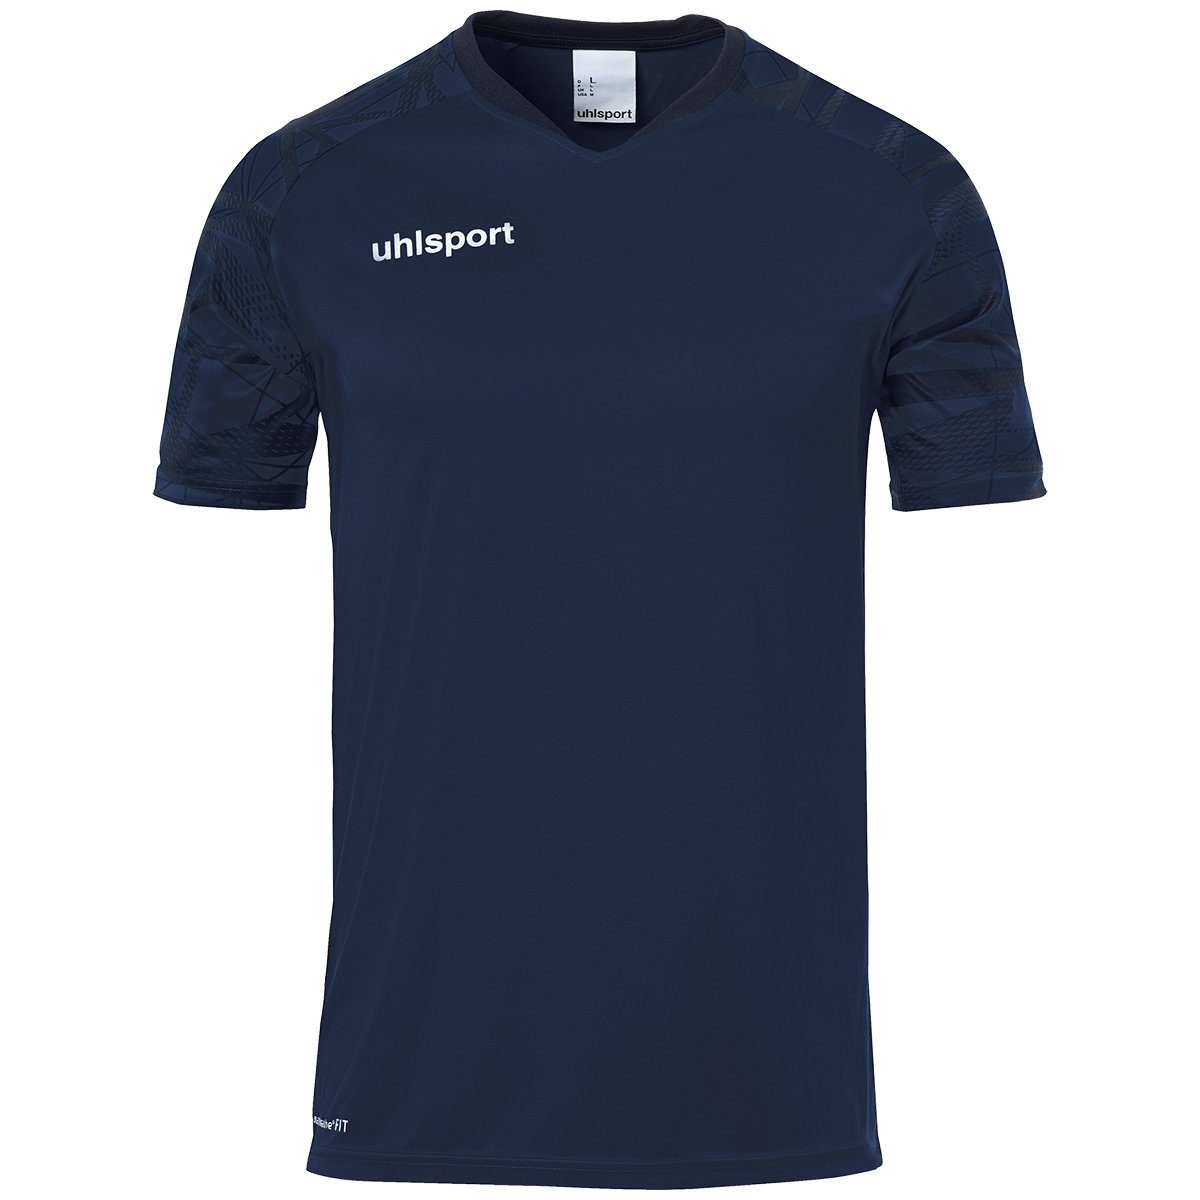 25 uhlsport Trainingsshirt TRIKOT marine/marine GOAL Trainings-T-Shirt atmungsaktiv uhlsport KURZARM